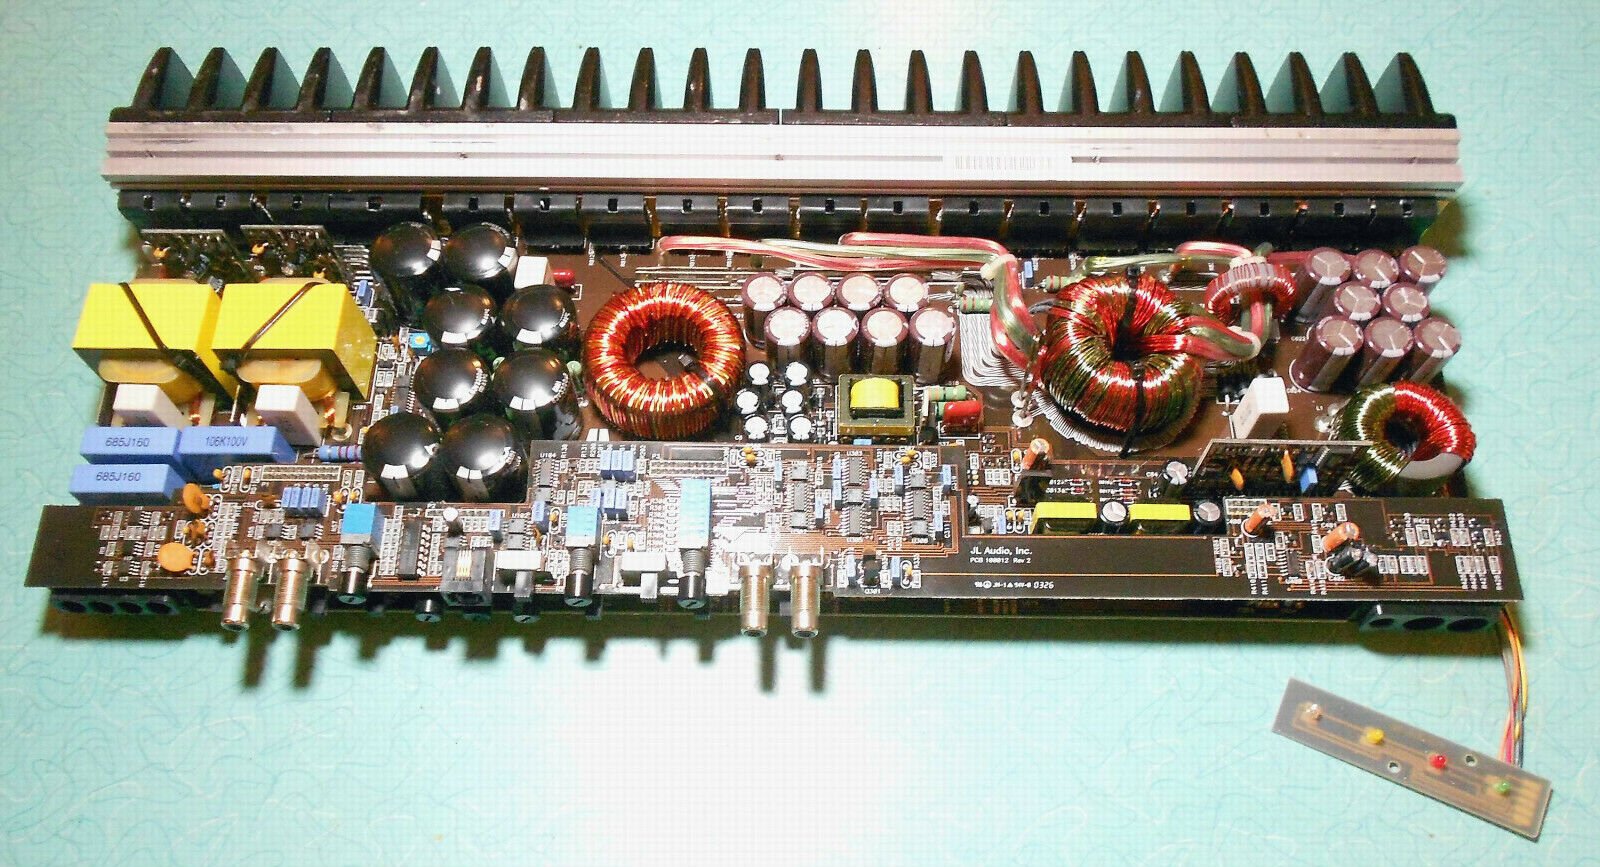 JL-Audio-1000-1-or-1000-1v2-Amp-Board-Set.jpg